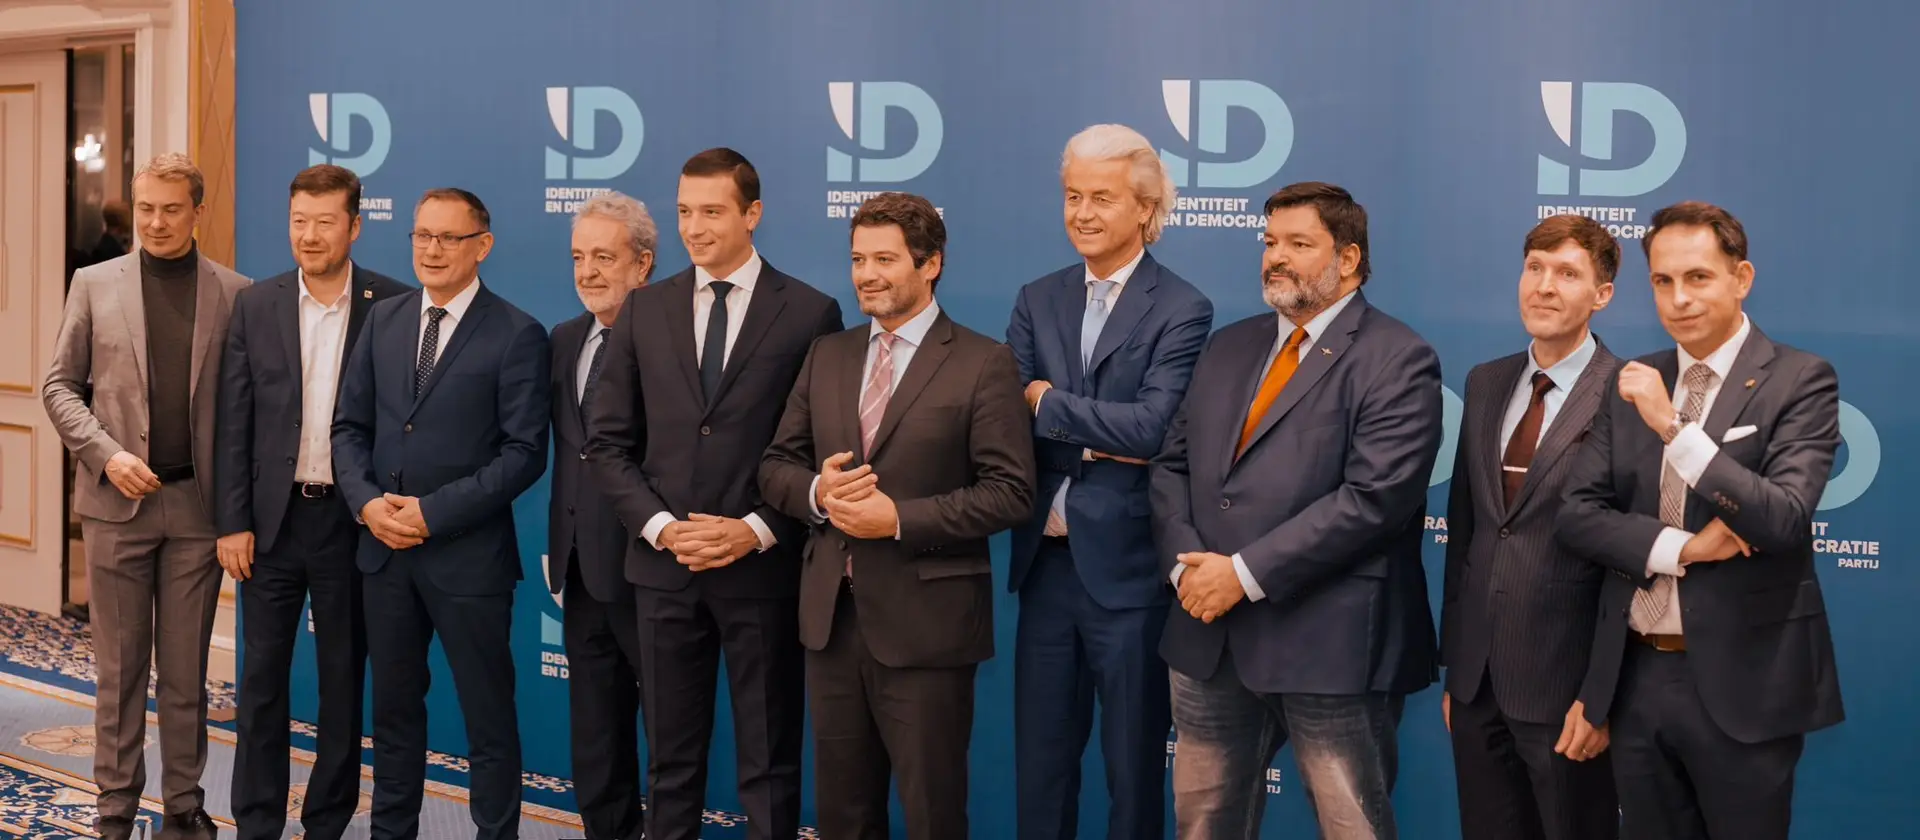 André Ventura durante um encontro do Partido Identidade e Democracia, aliança europeia de partidos de extrema-direita, em novembro de 2022. 